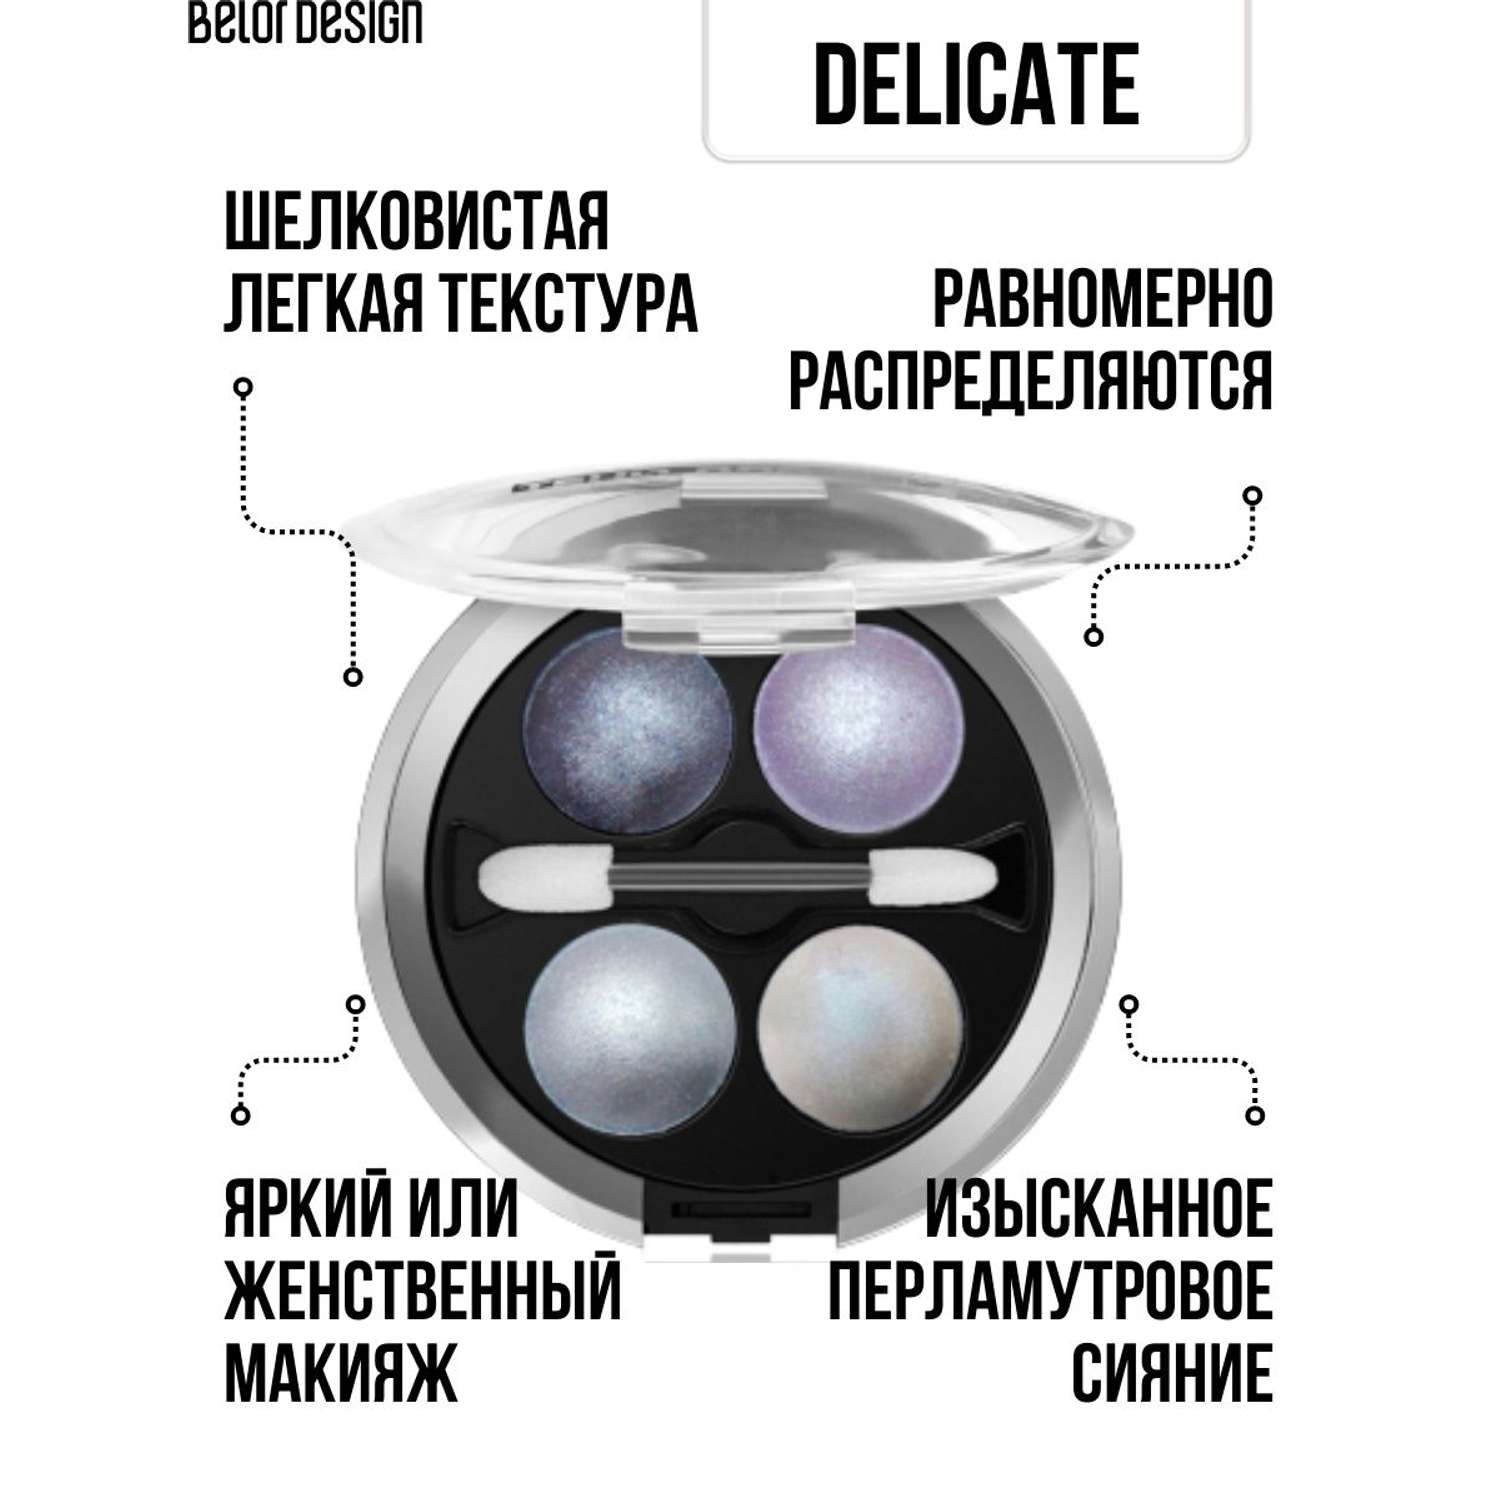 Тени для век Belor Design 4-х цветные Delicate тон 43 - фото 3